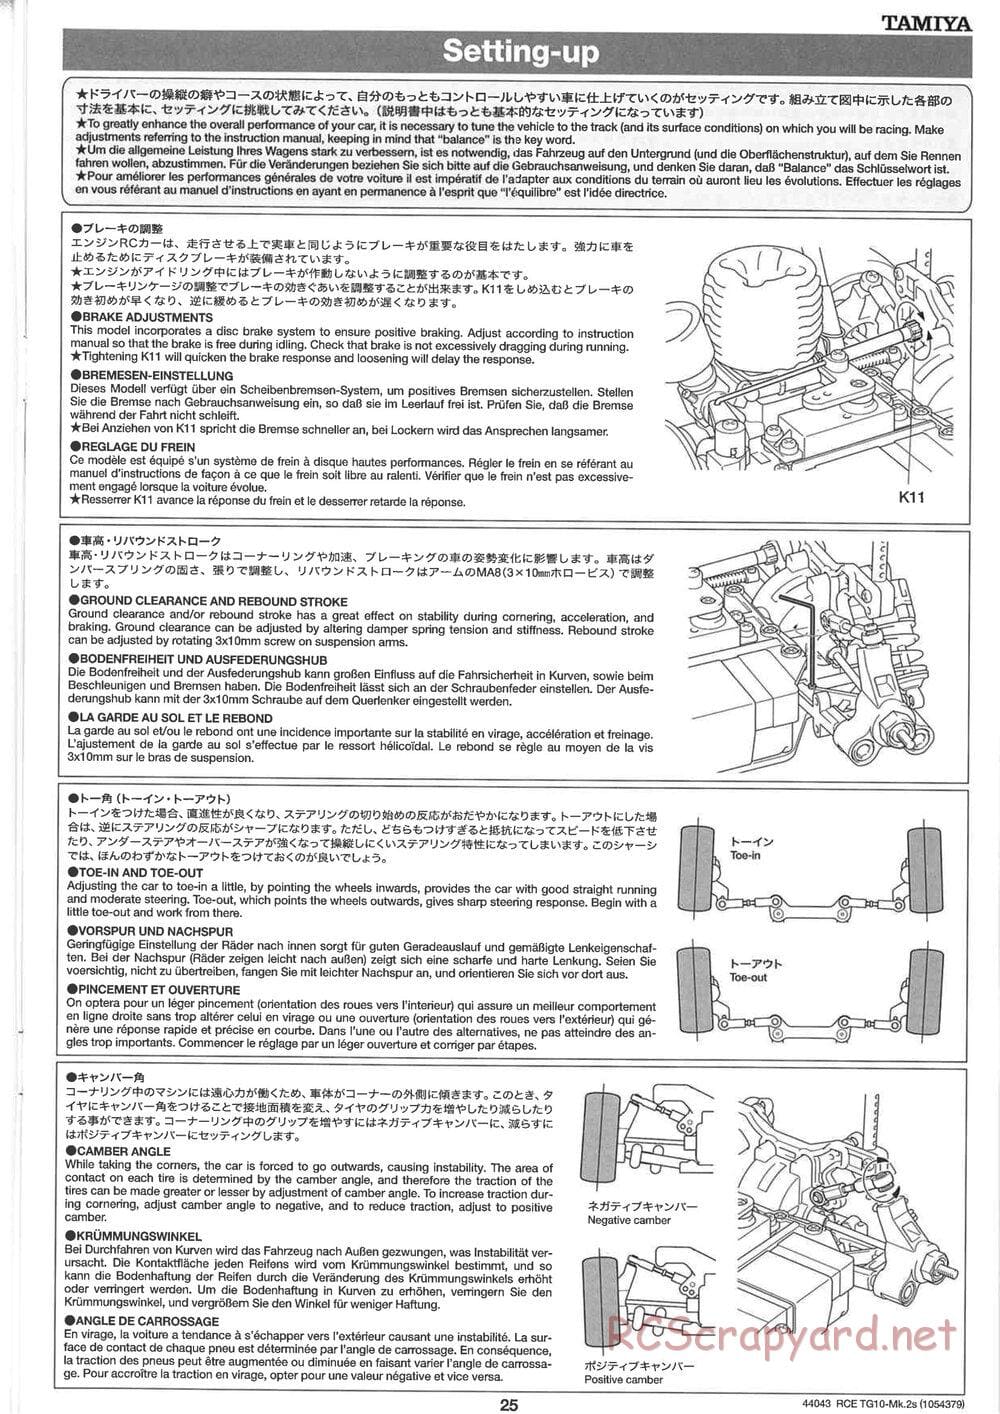 Tamiya - TG10 Mk.2s Chassis - Manual - Page 26